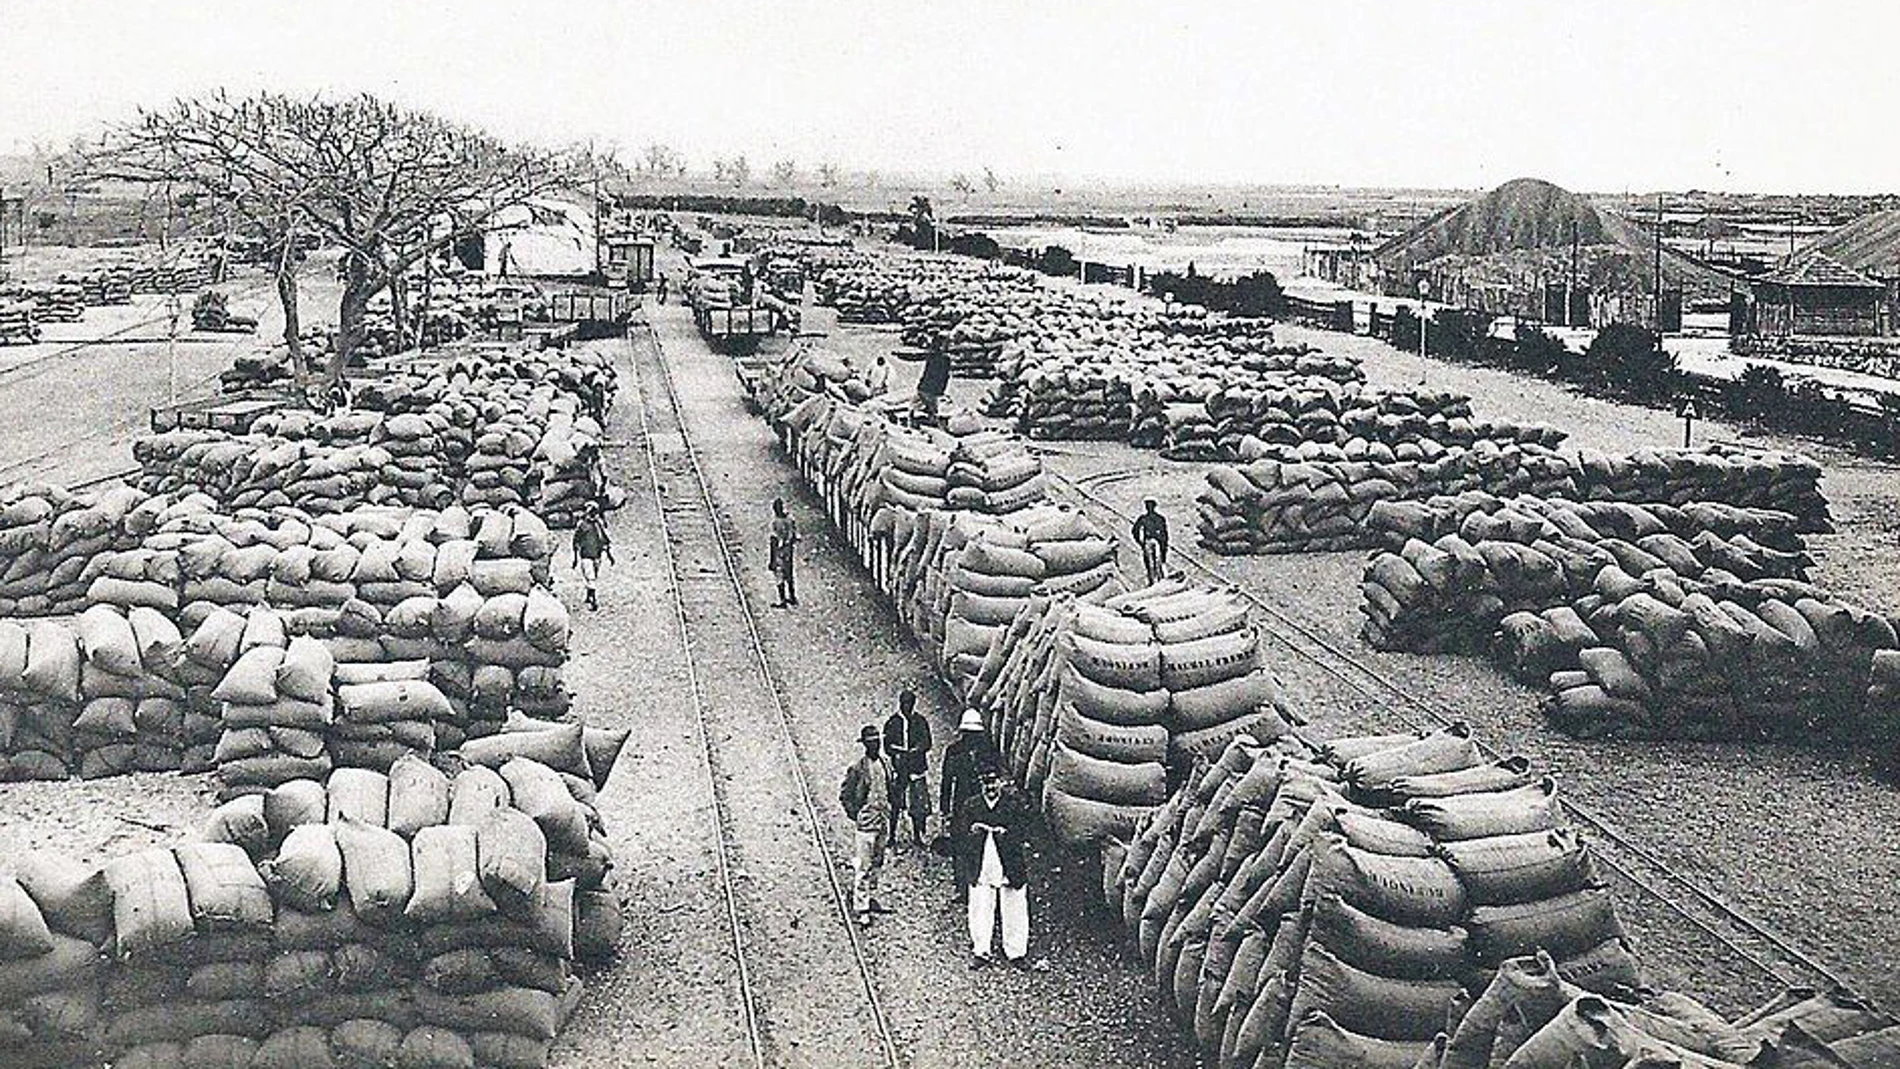 Centenares de sacos de cacahuetes preparados para su exportación en el Senegal de principios del siglo XX.